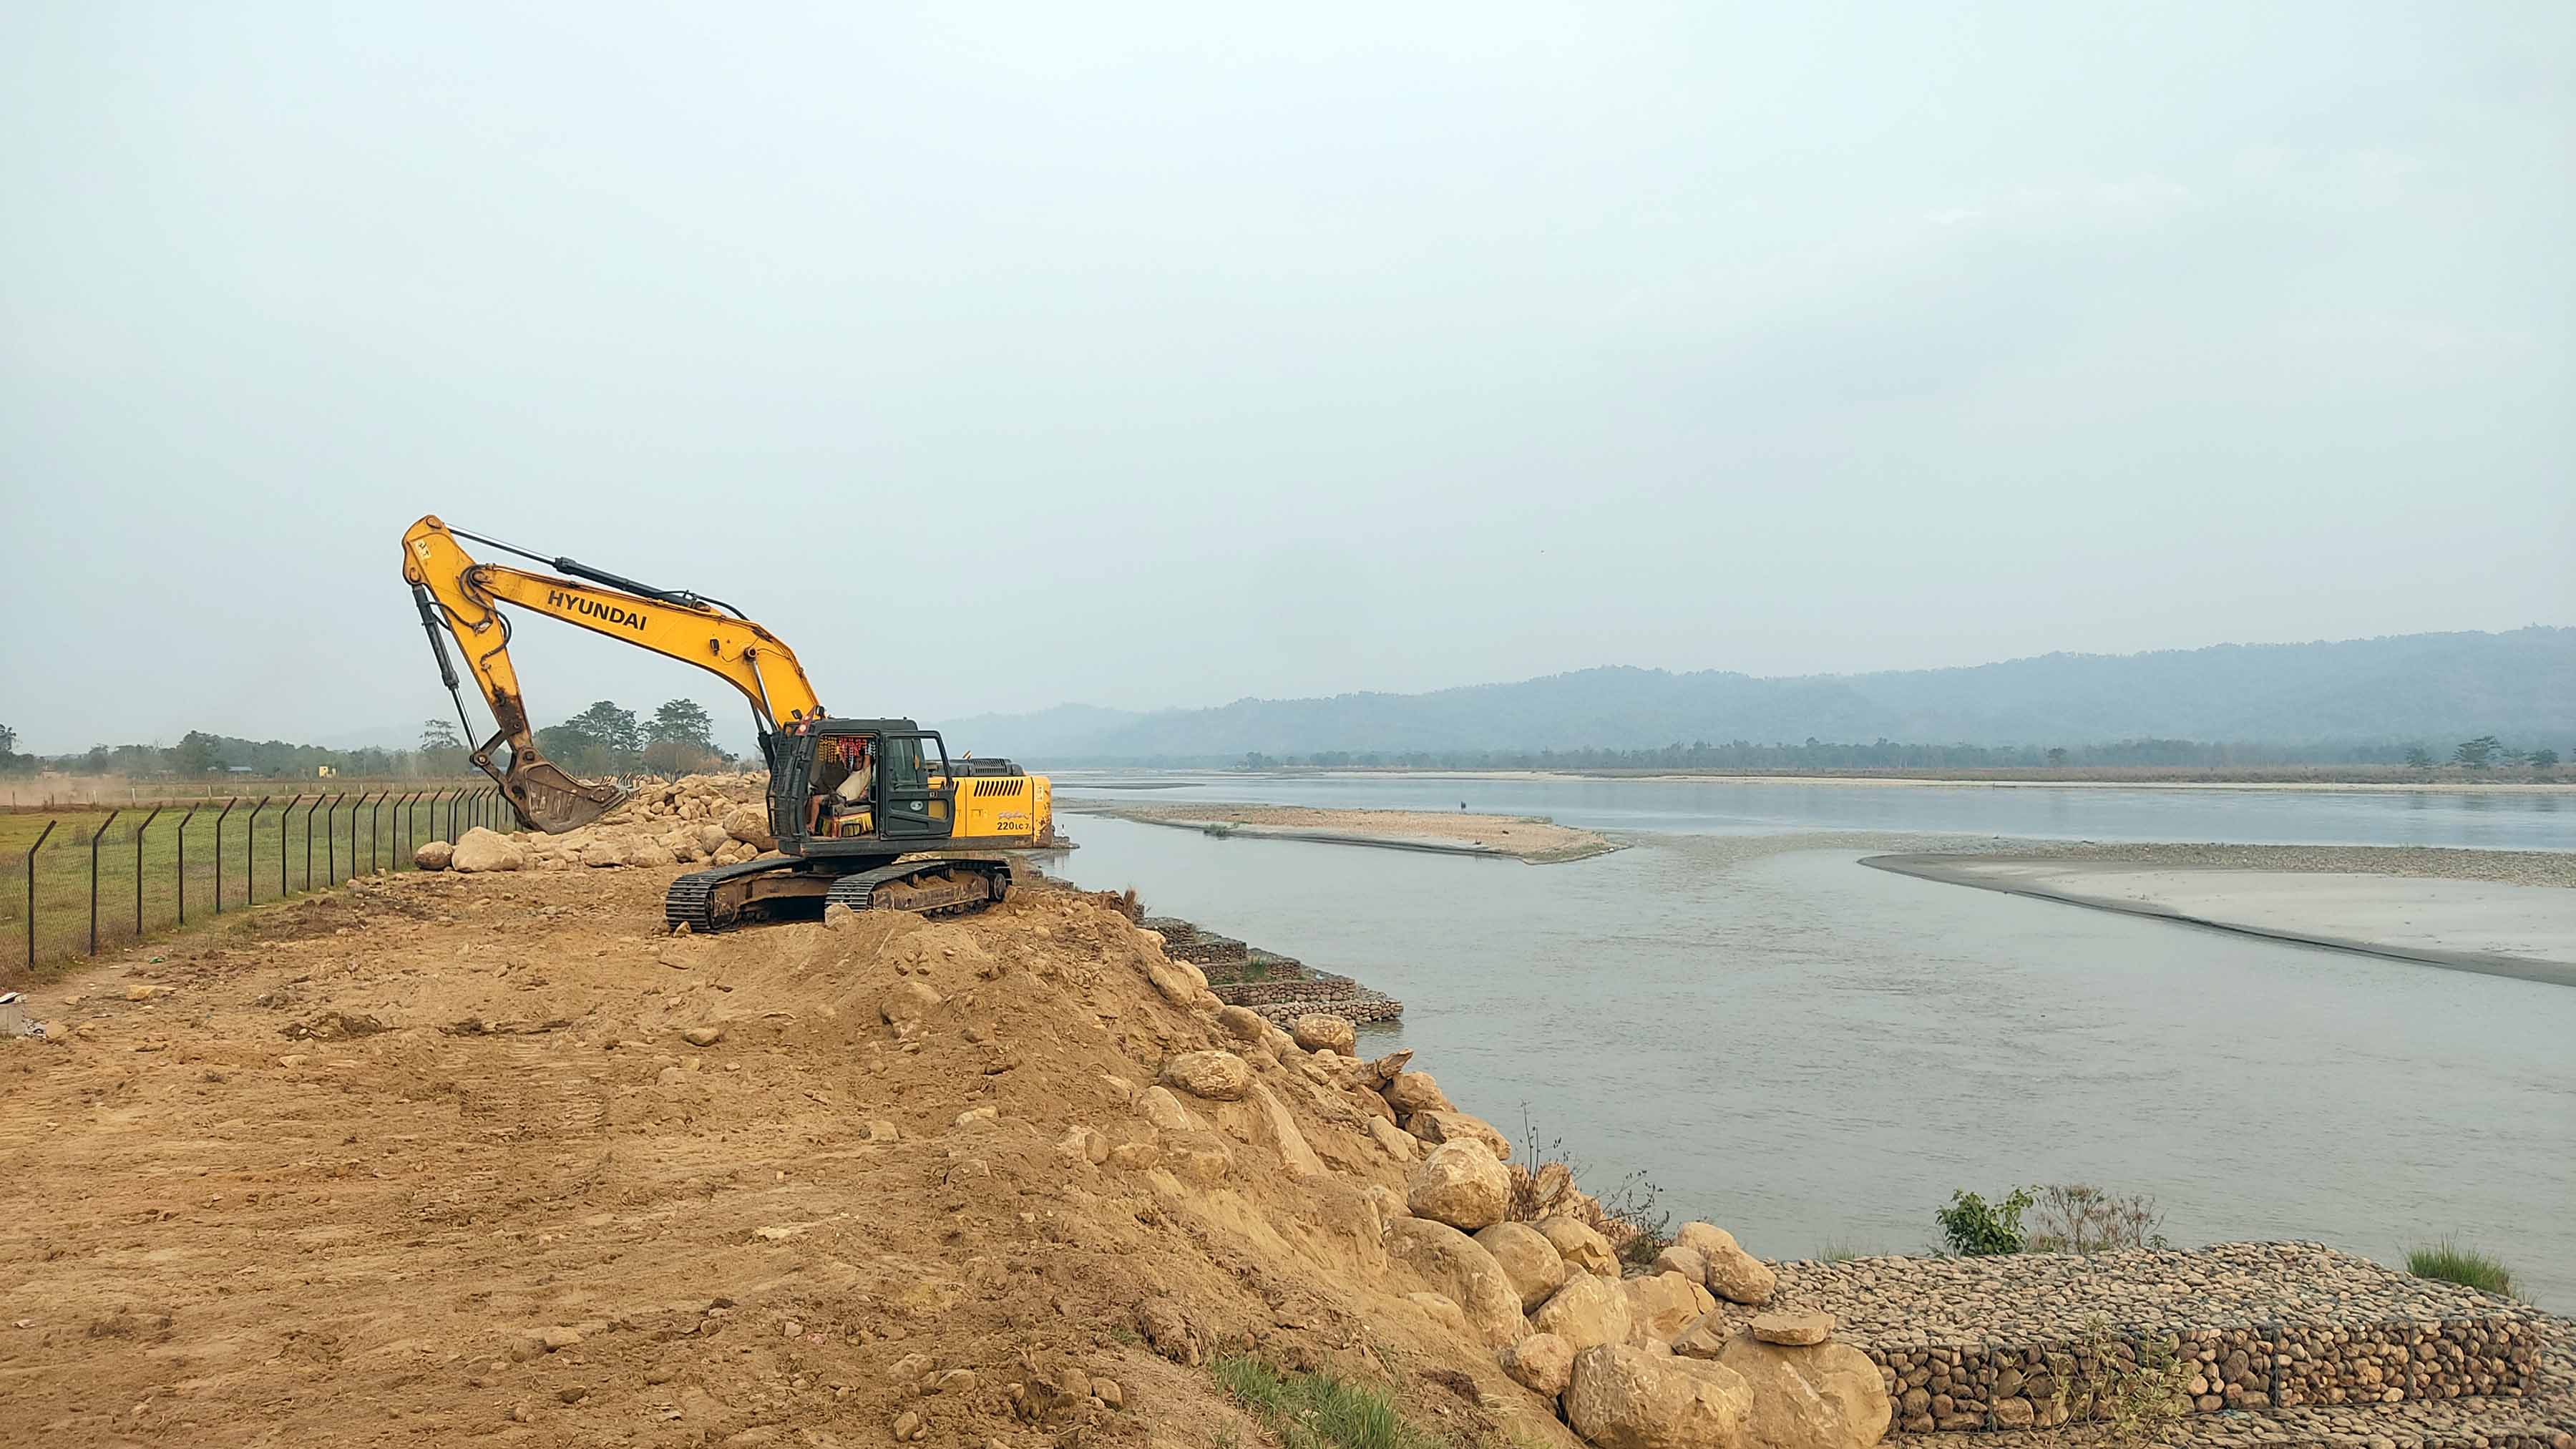 नारायणी नदी व्यवस्थापनका लागि नवलपुर क्षेत्रमा तटबन्ध